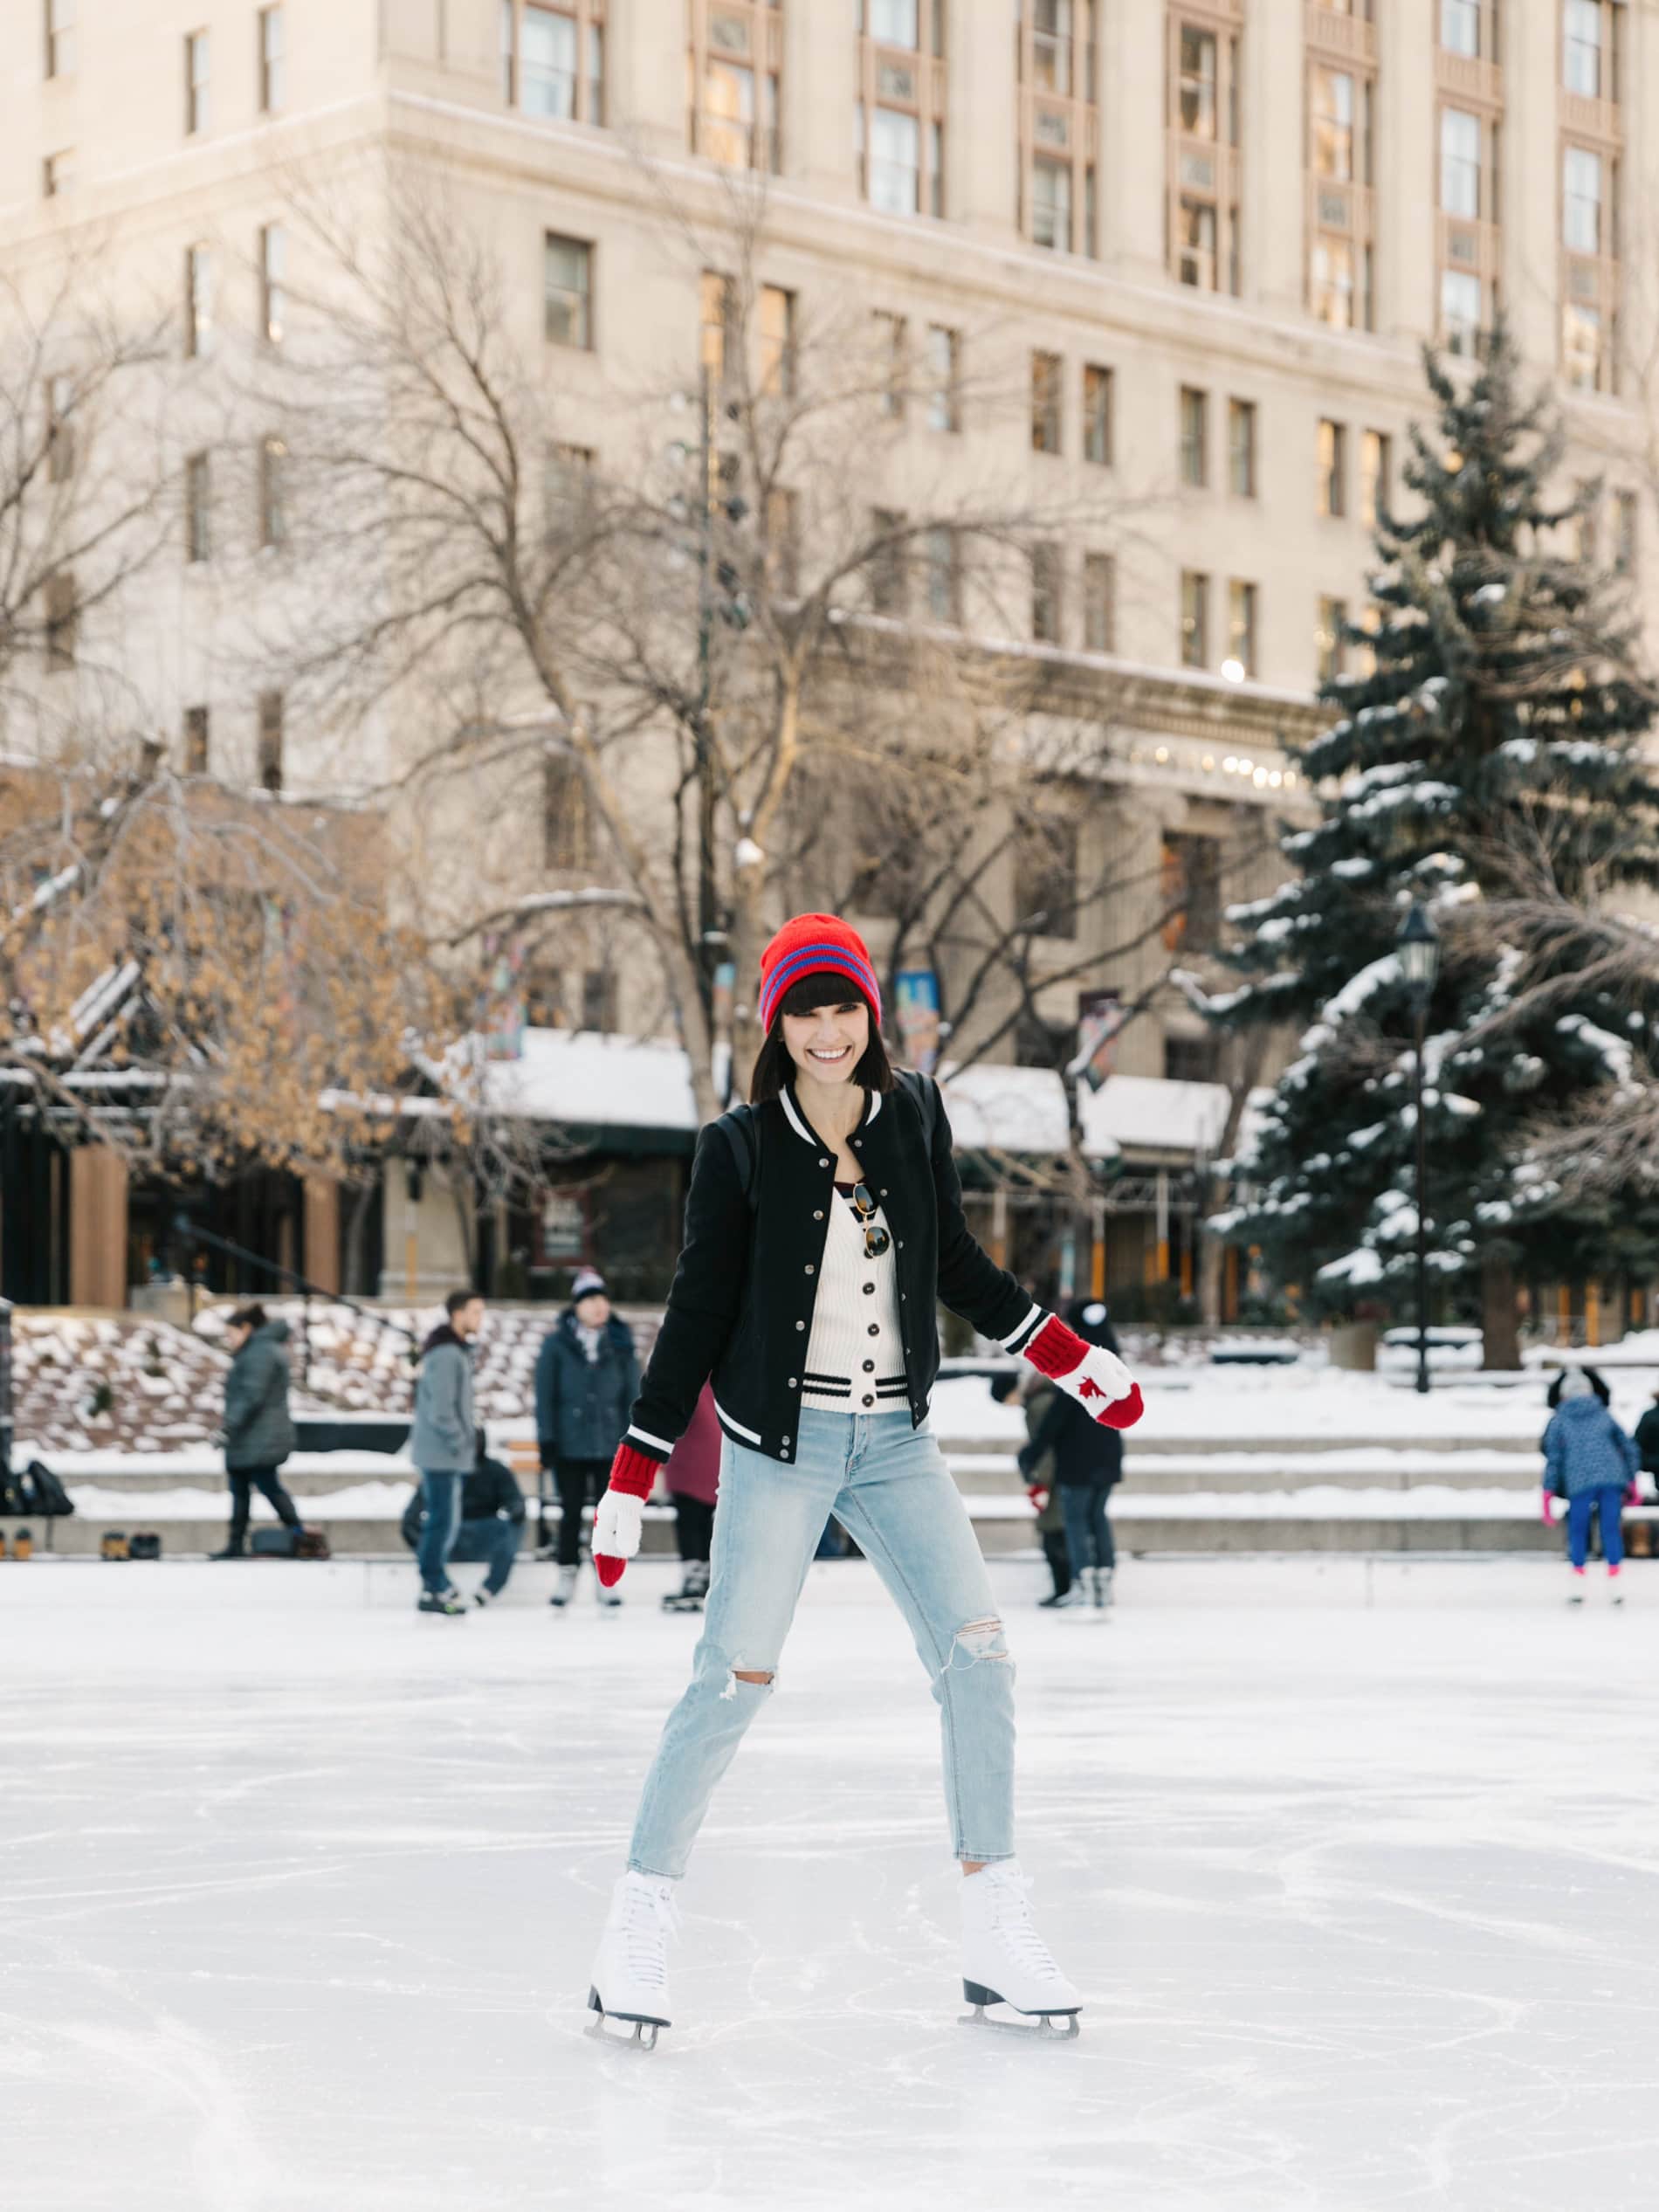 Ania B skating at Olympic Plaza, Calgary